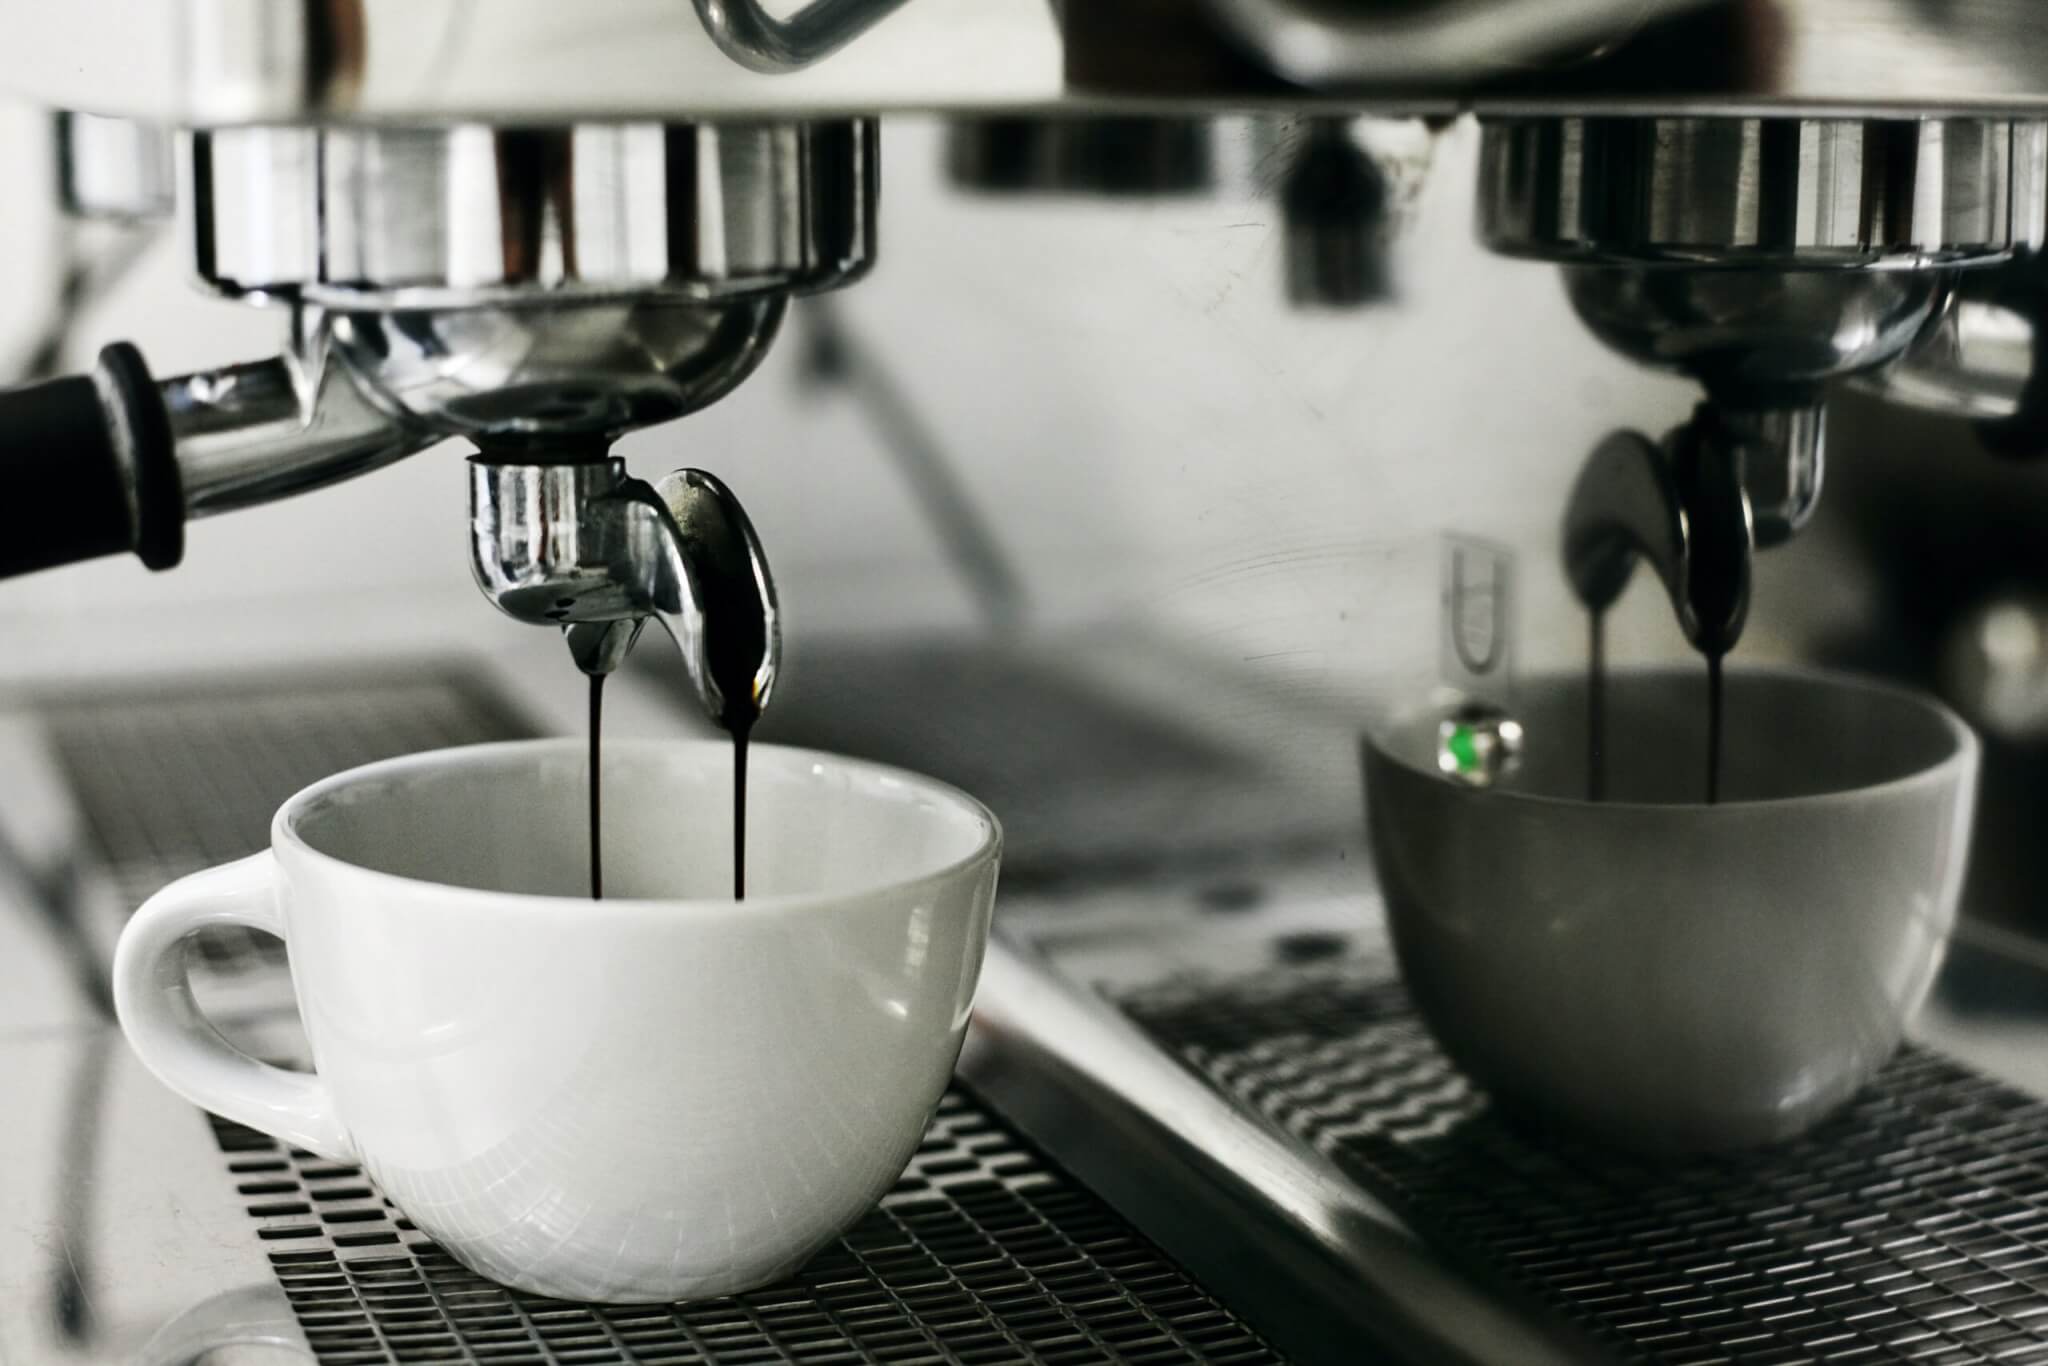 Espresso machine making a cup